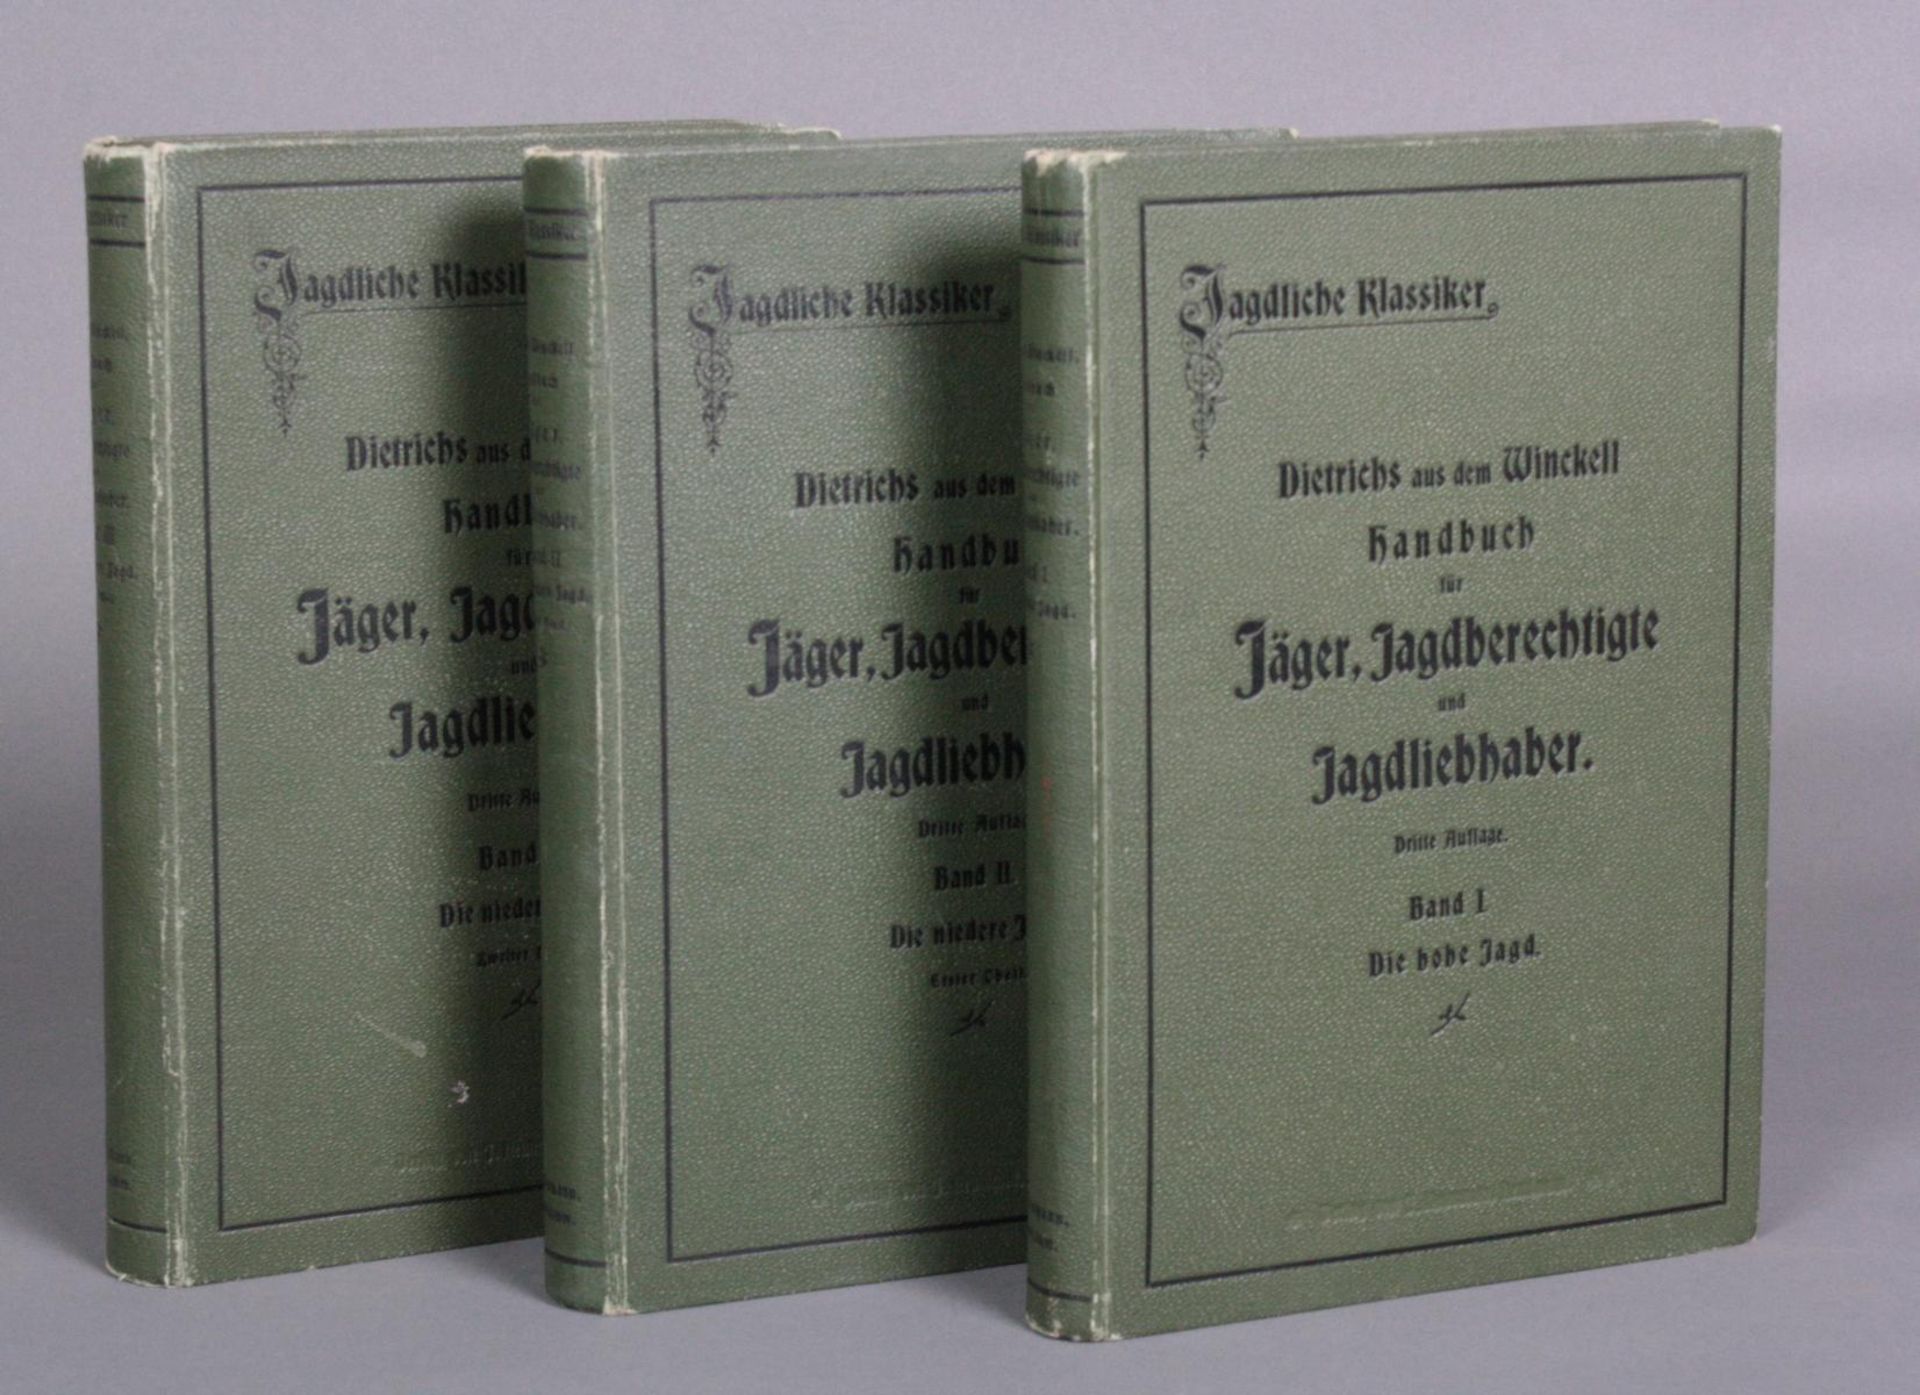 Handbuch für Jäger in Drei Bänden. Dietrichs aus dem Winckell, Band I-III